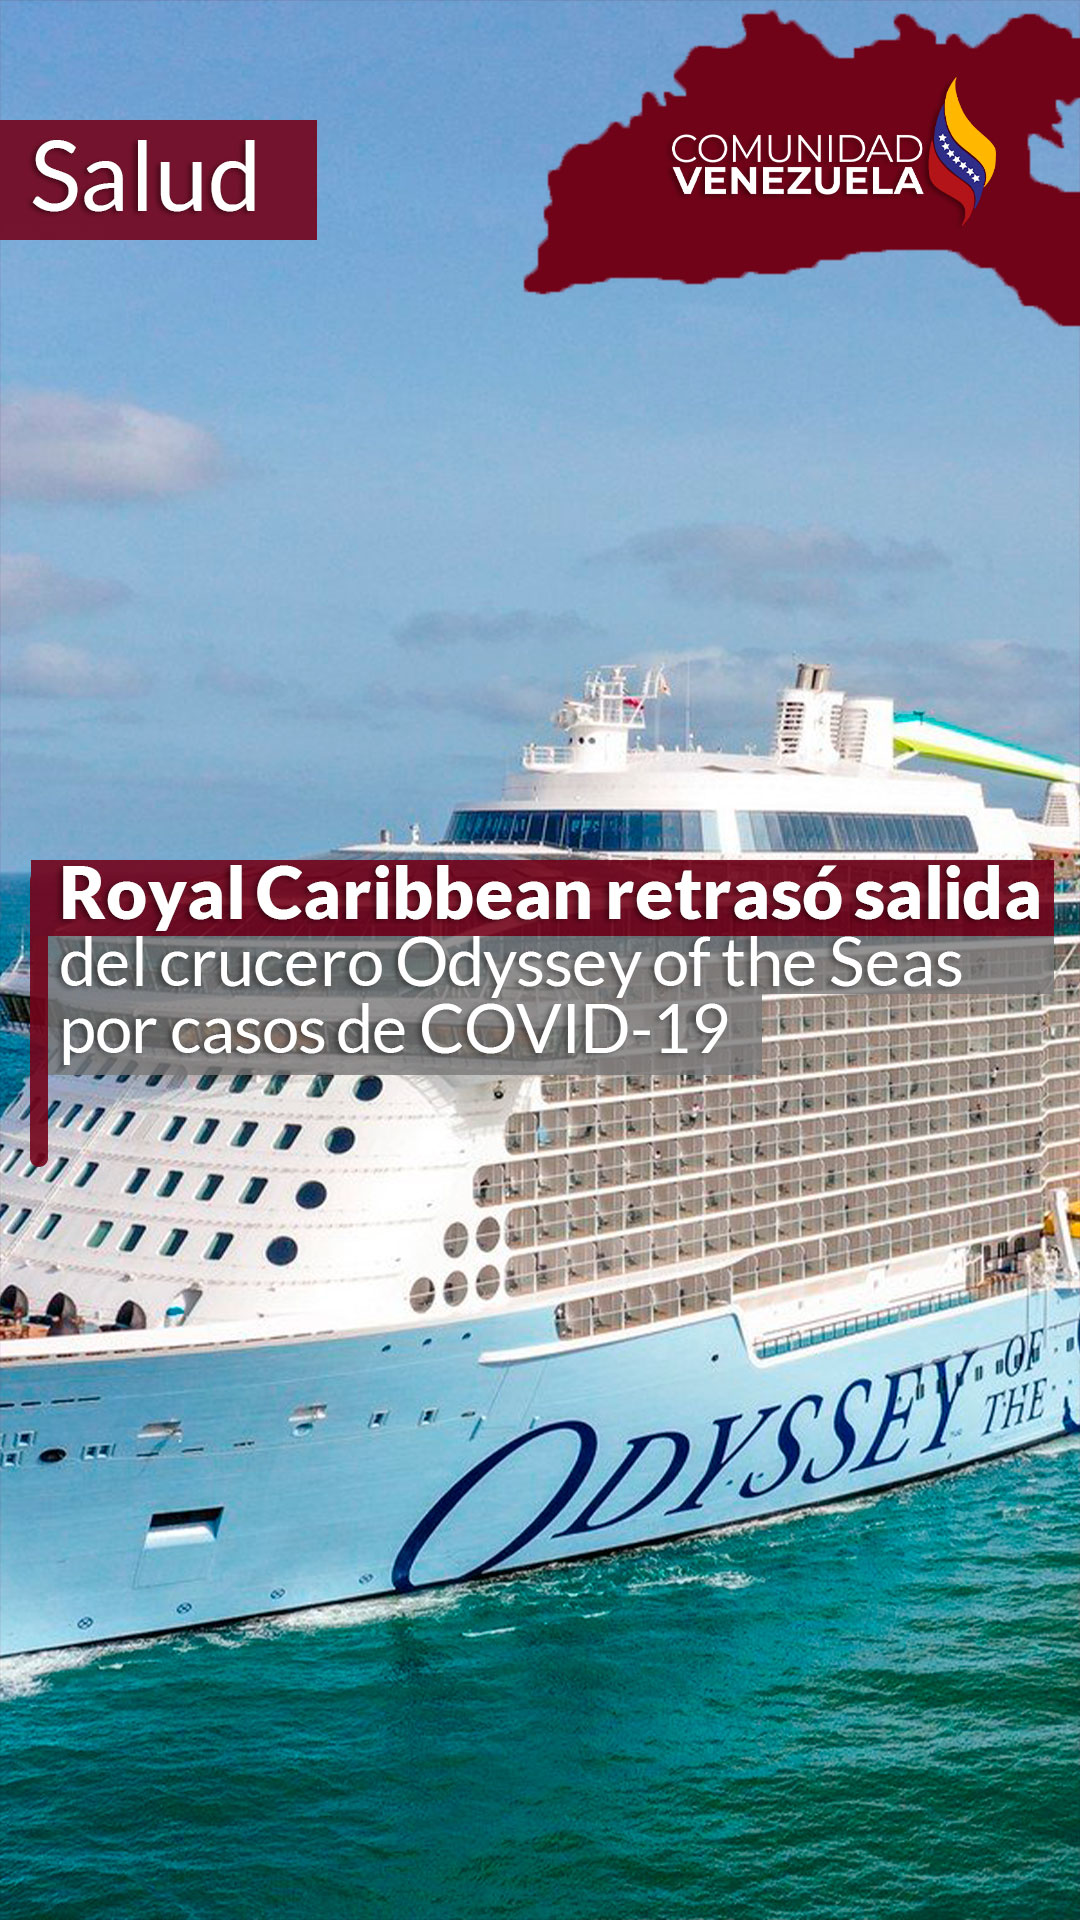 Royal Caribbean retraso salida del crucero Odyssey of the Seas por casos de COVID-19